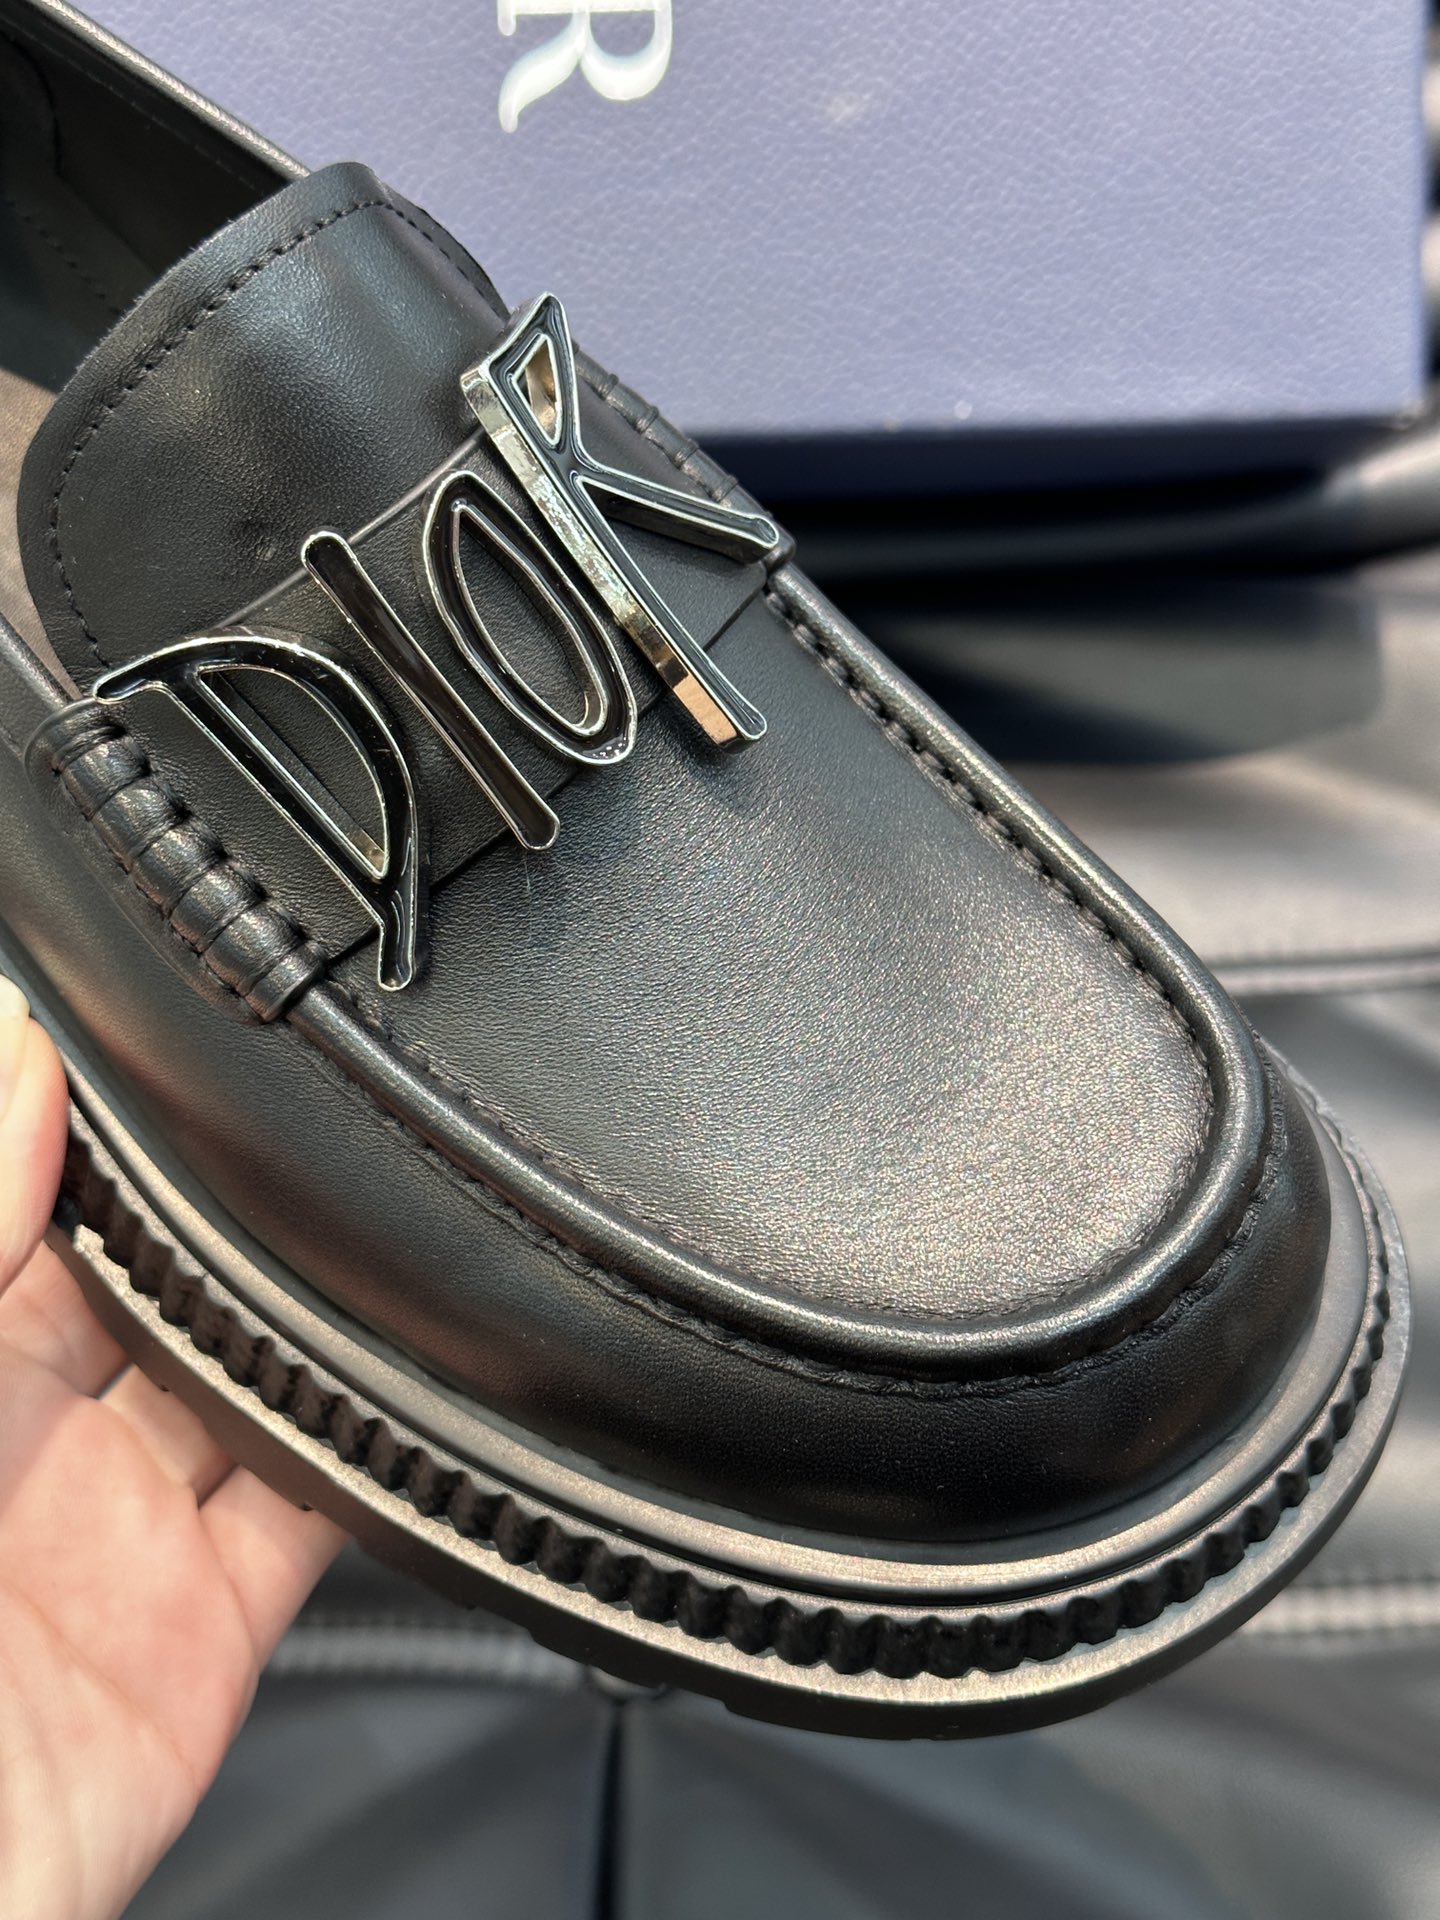 ️️Dr男士经典乐福皮鞋将经典的鞋履款式与复古的加州风格融为一体便鞋款式设计方便穿脱采用进口牛皮精心制作